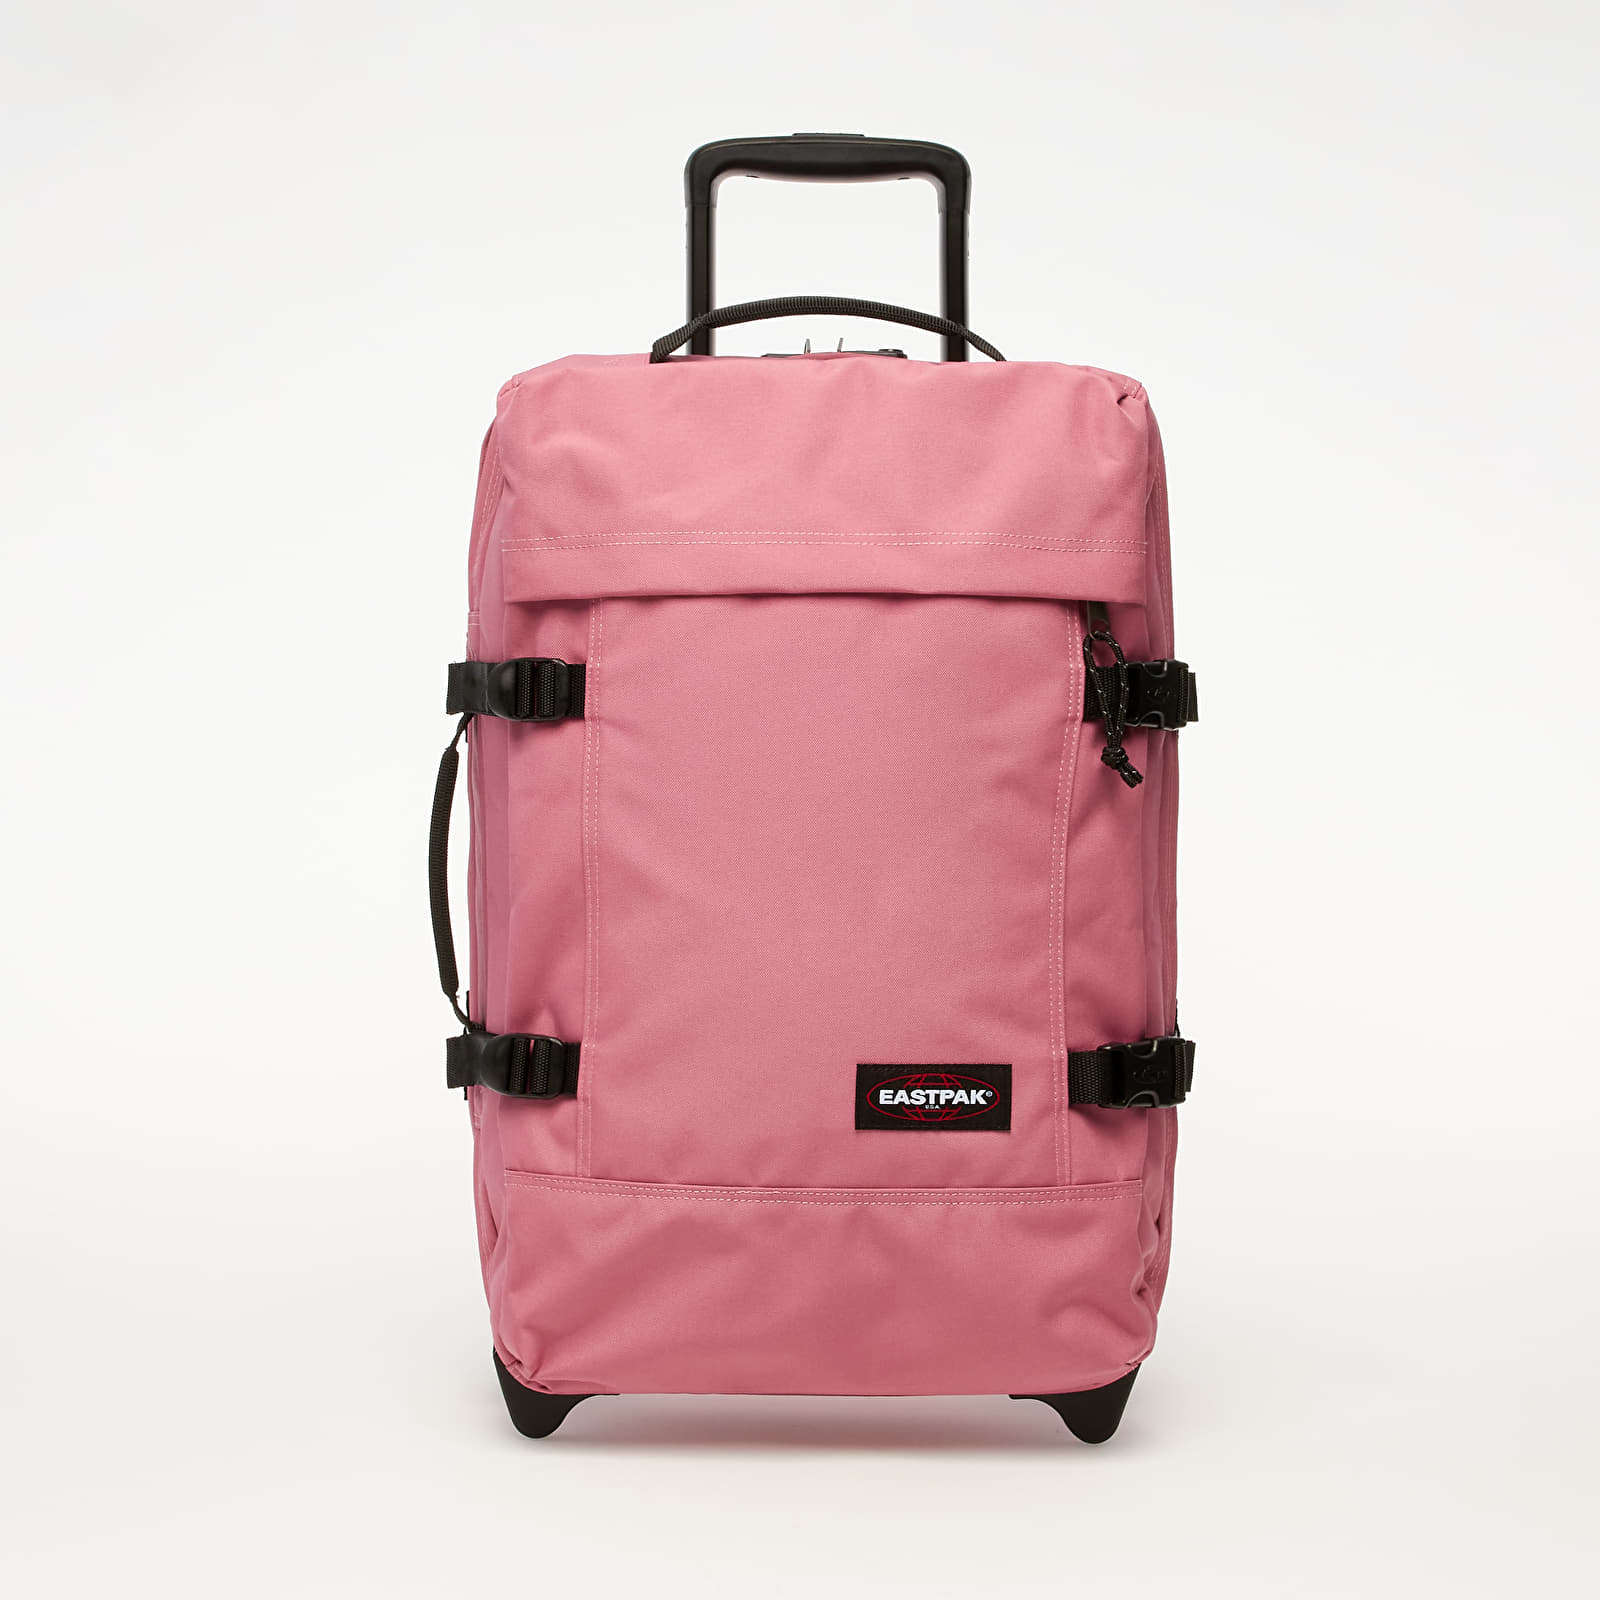 Torbe & ruksaci Eastpak Tranverz Travel Bag Salty Pink